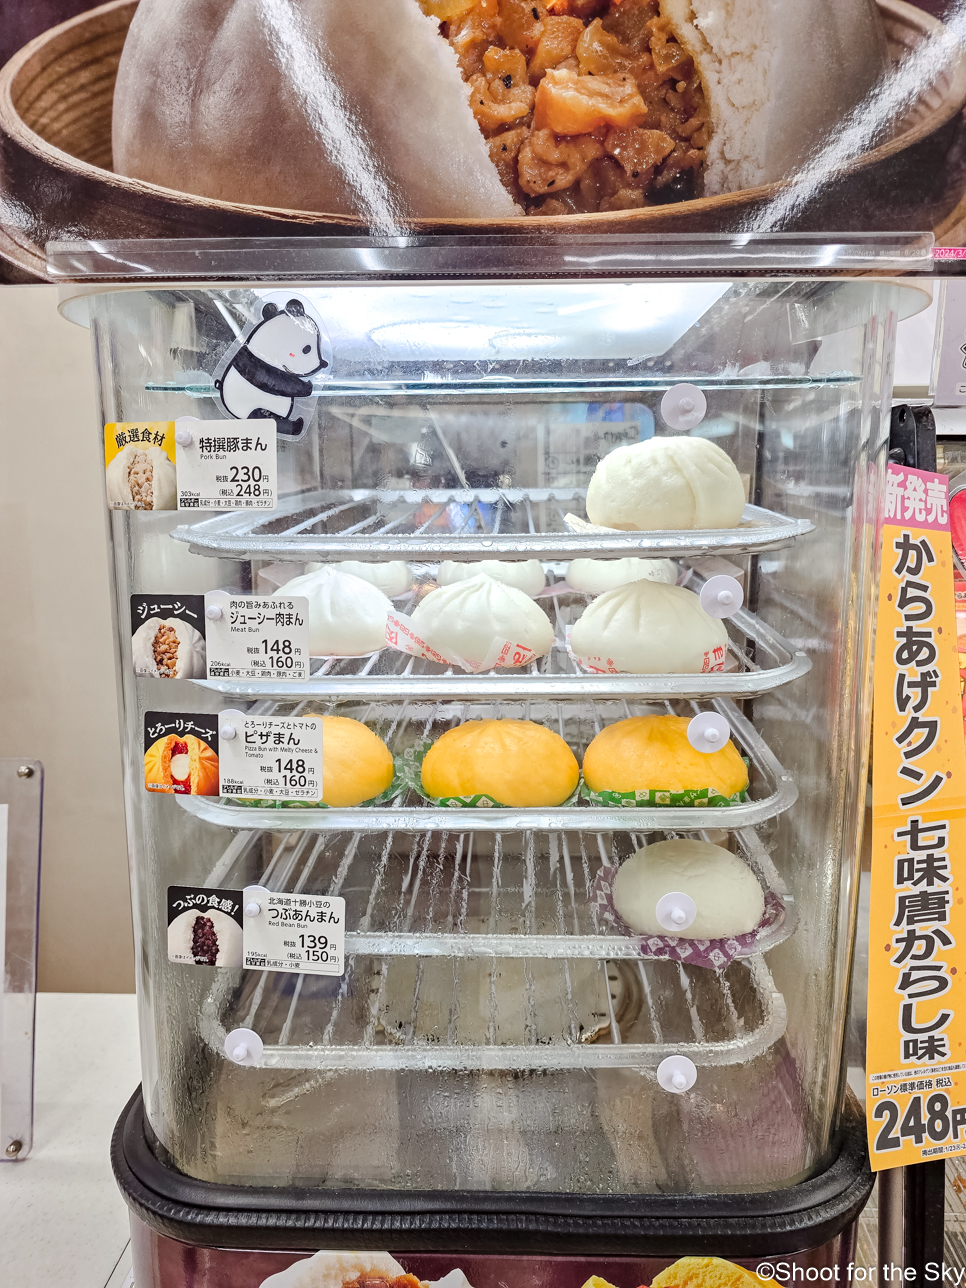 일본 편의점 후쿠오카 일정 중 먹기 좋았던 일본 간식